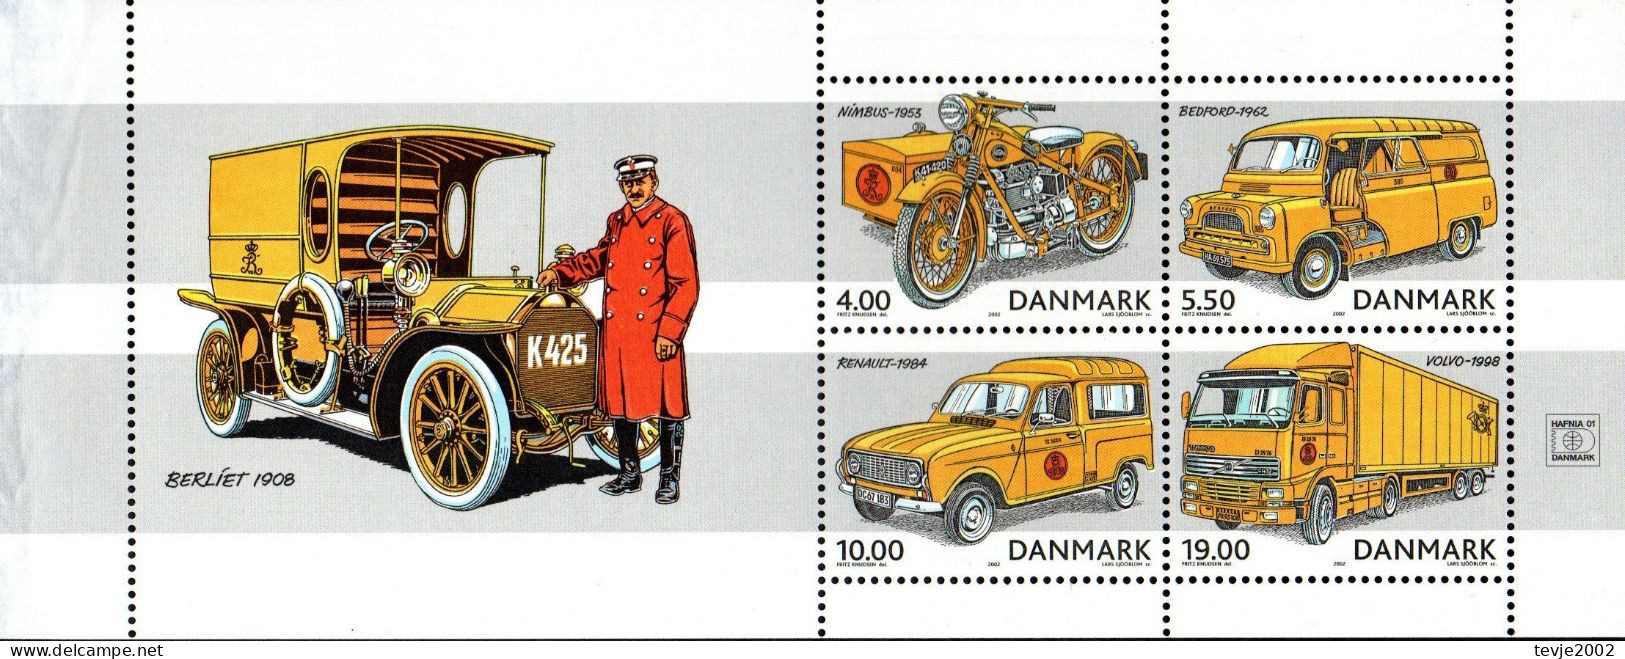 Dänemark 2002 - Mi.Nr. 1312 - 1315 (aus Markenheftchen) - Postfrisch MNH - Post - Nuovi